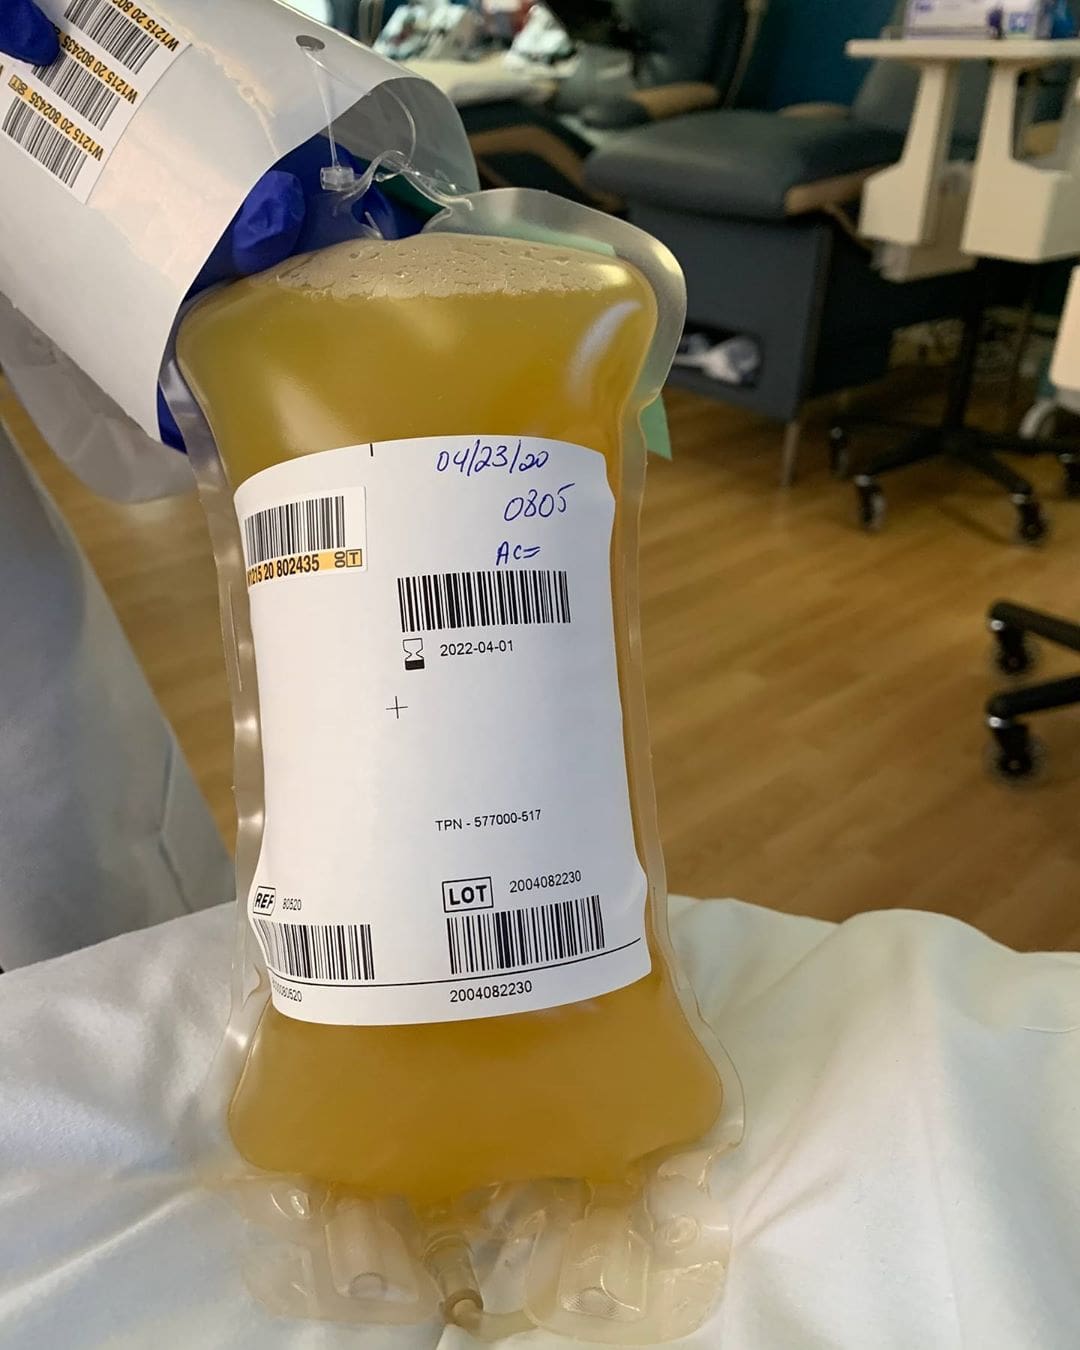 Том Хэнкс с женой выздоровели от COVID-19 и стали донорами плазмы крови. В сети шутят, что это спасёт весь мир 34